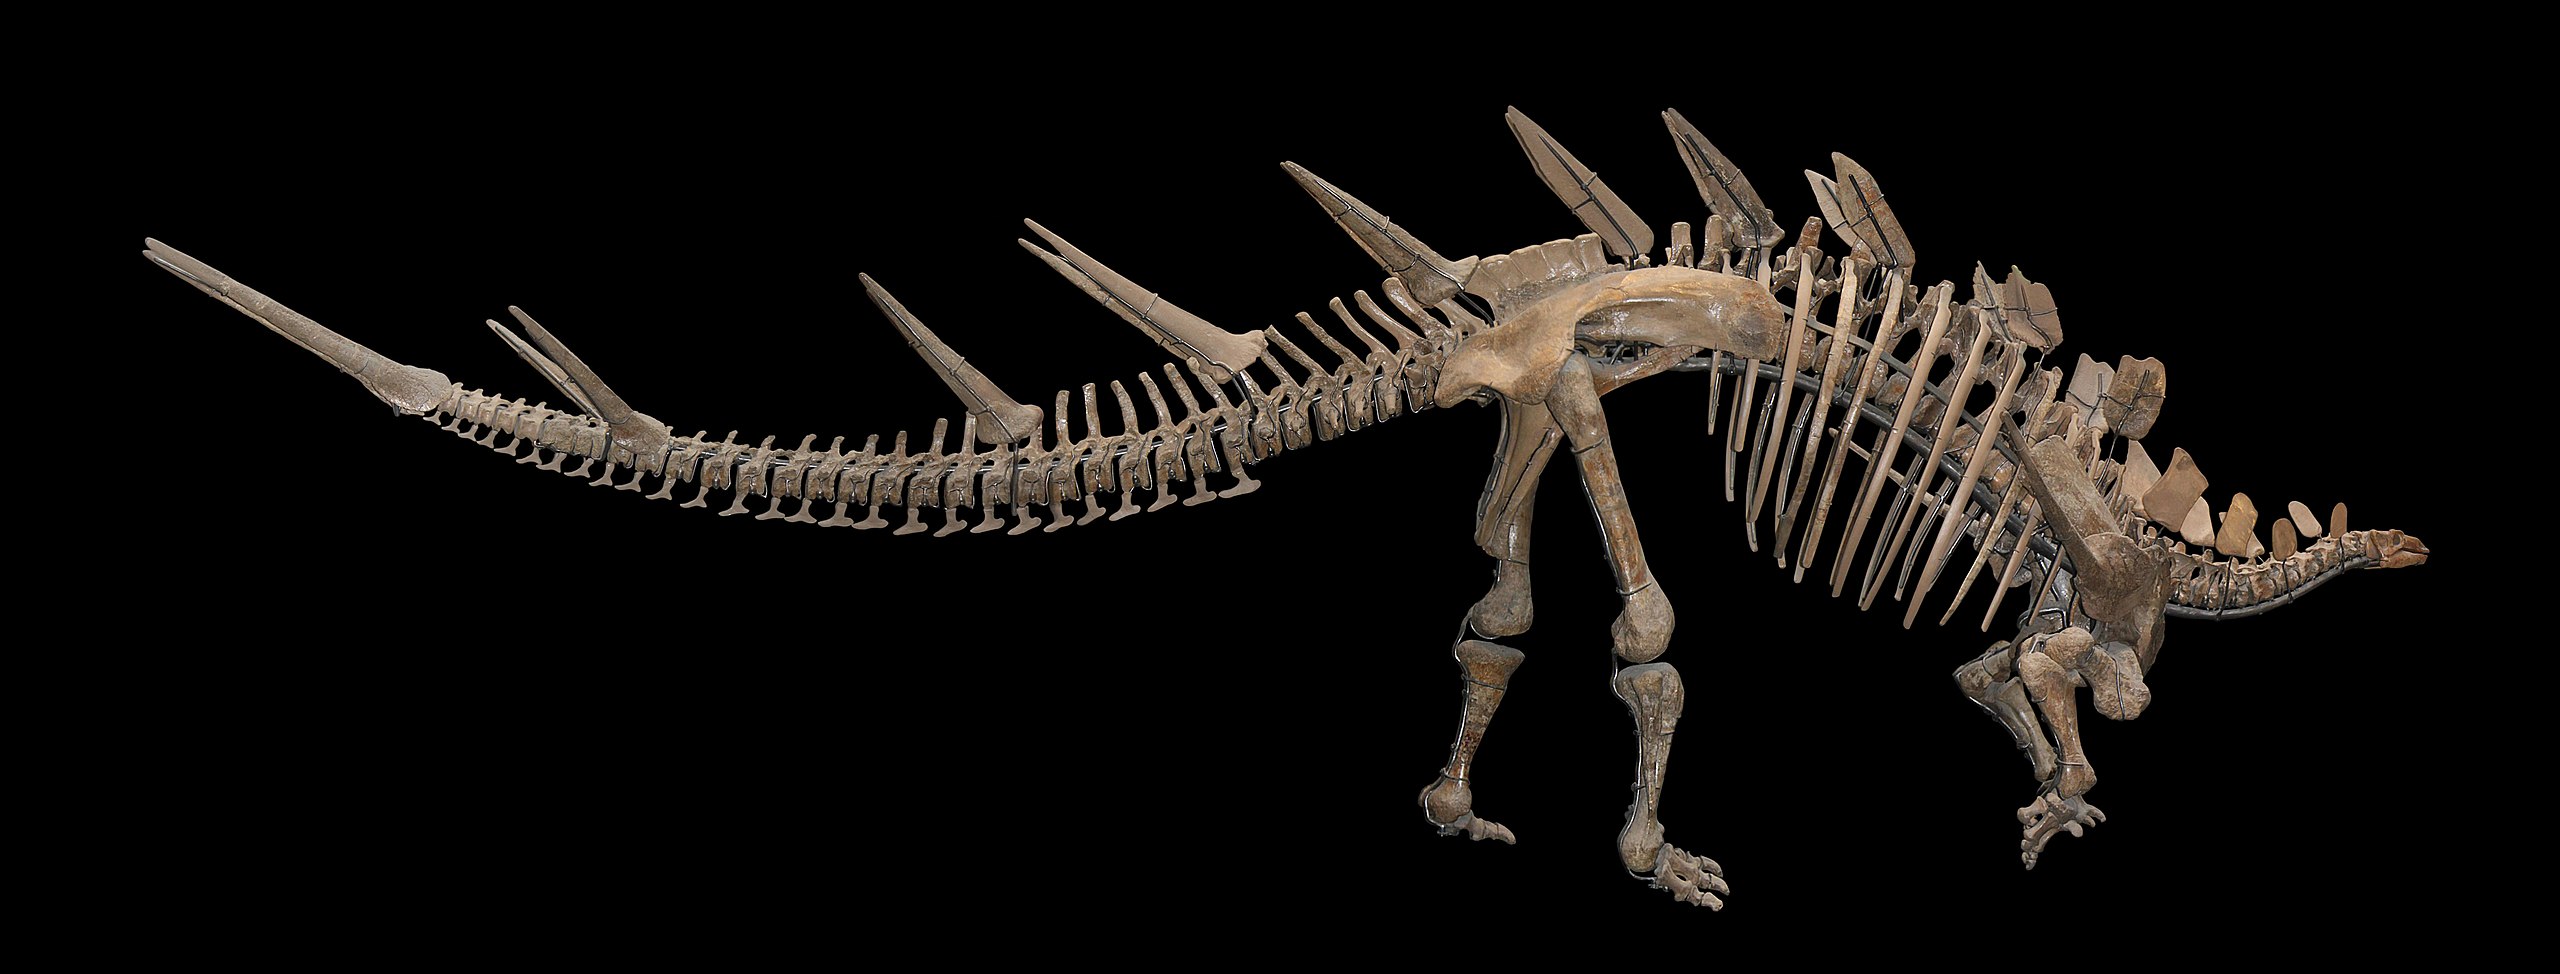 Stegosauři, mezi které patří i tento kosterní exemplář východoafrického druhu Kentrosaurus aethiopicus, měli pomalý metabolismus a mohli být ektotermní podobně jako dnešní plazi. Není ale jisté, do jaké míry byli tito i všichni ostatní ptakopánví din